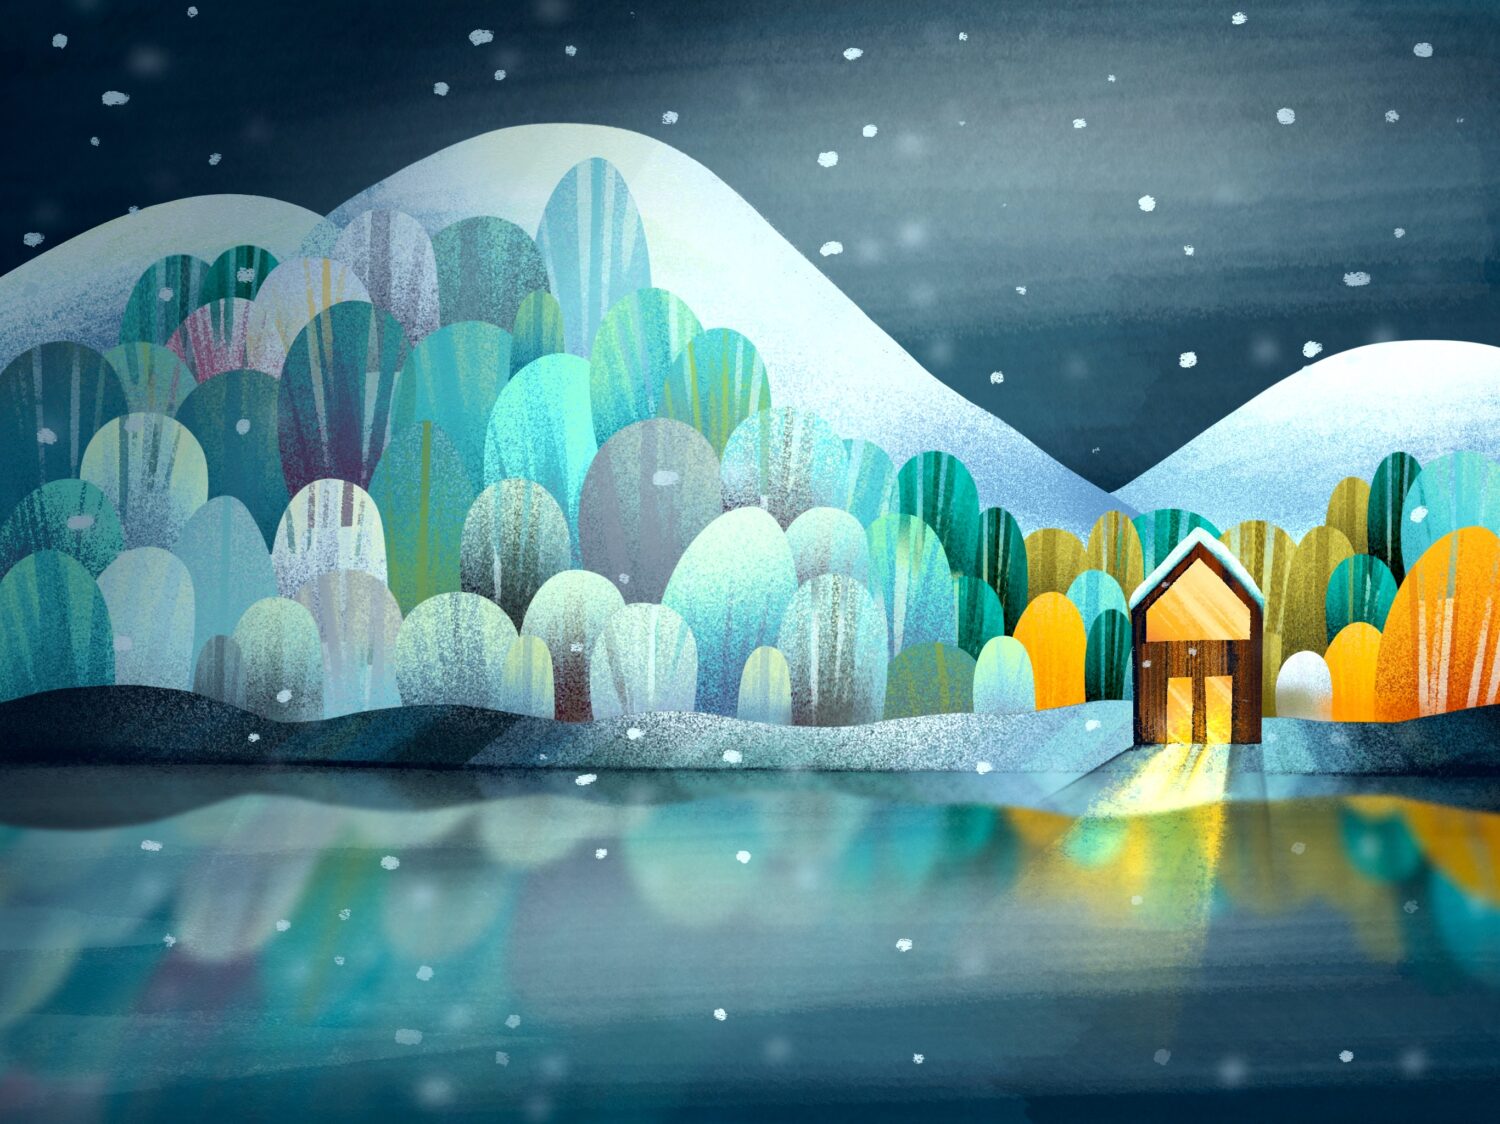 zimní chatka originální design ilustrace